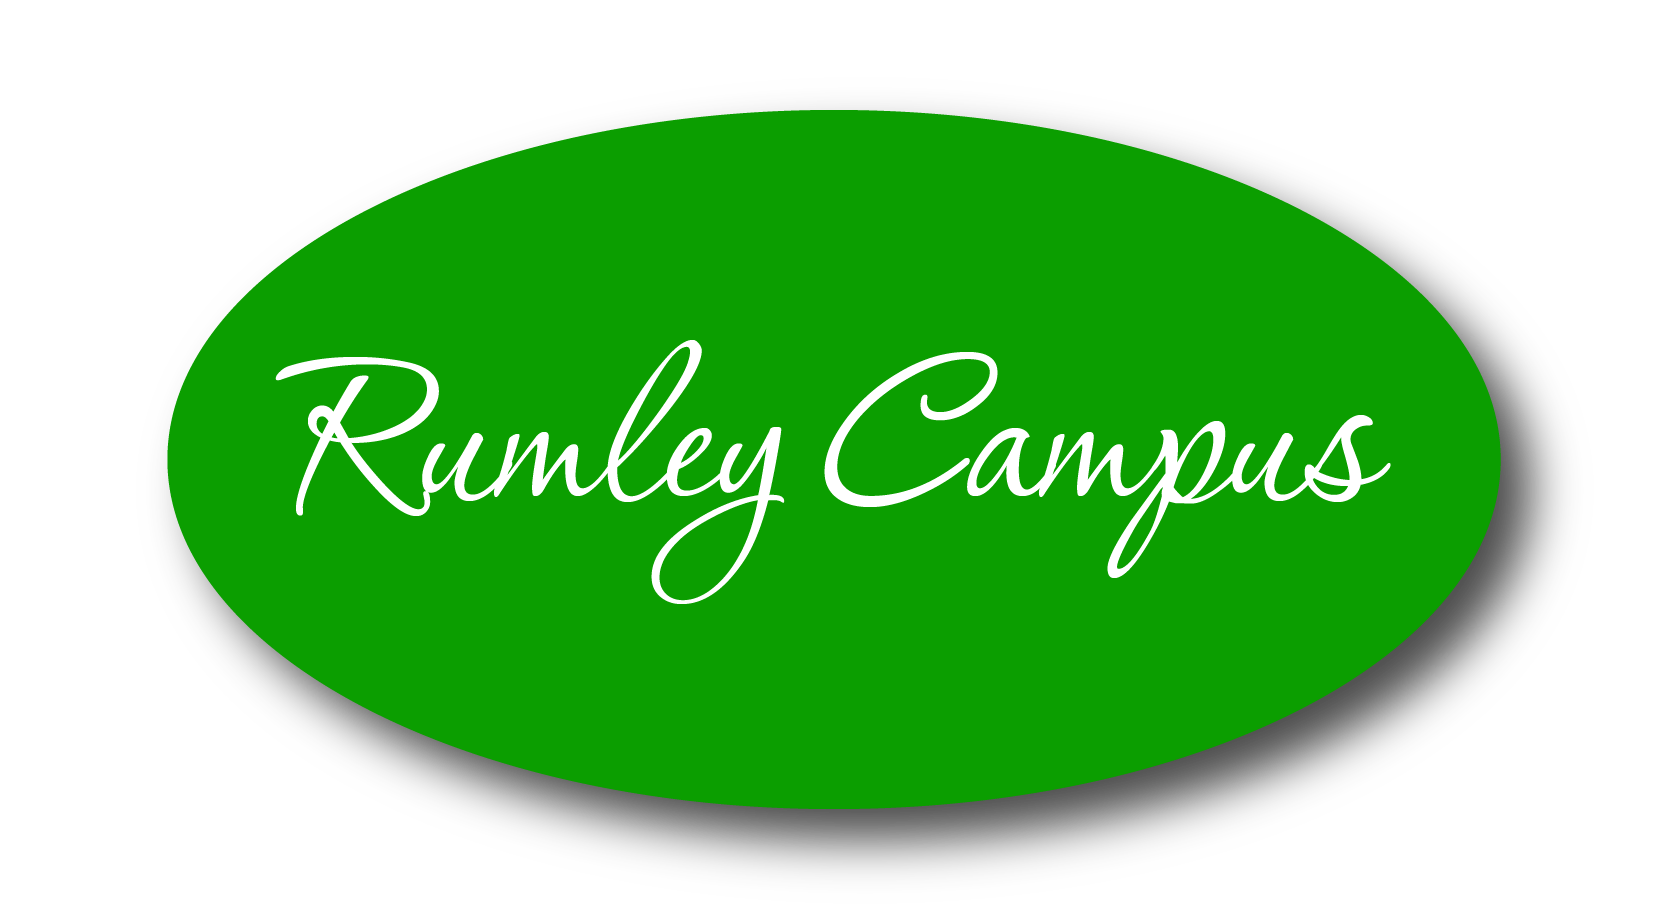 RumleyCampus_Button